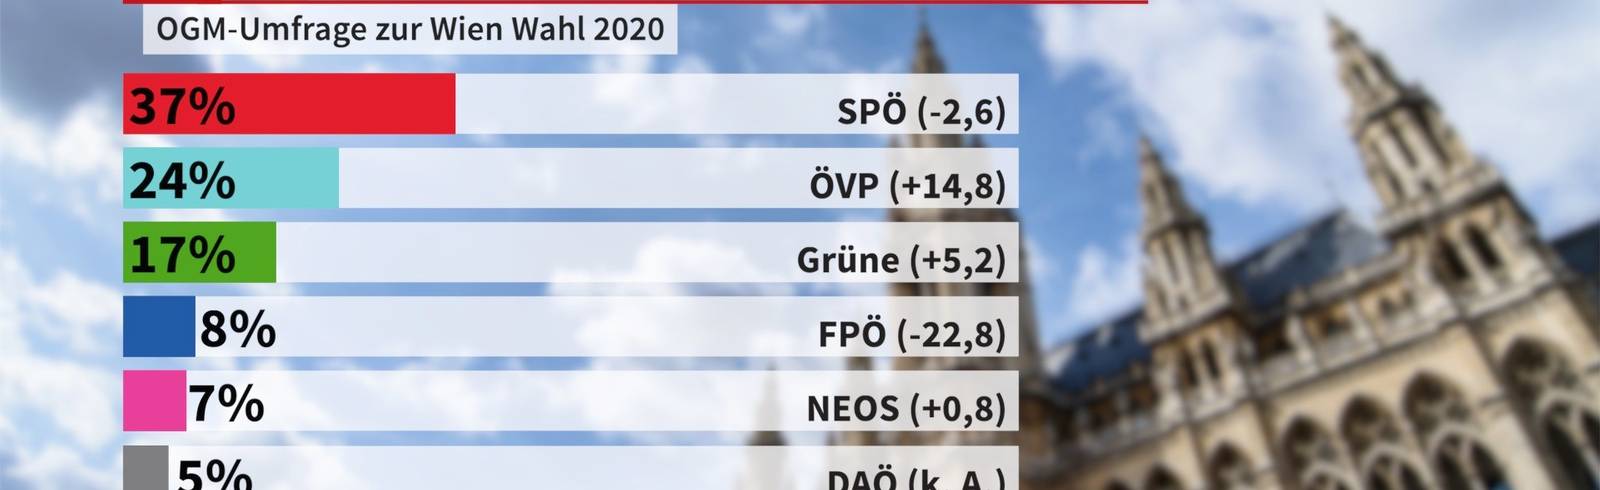 Wien-Umfrage: SPÖ klar auf Platz 1